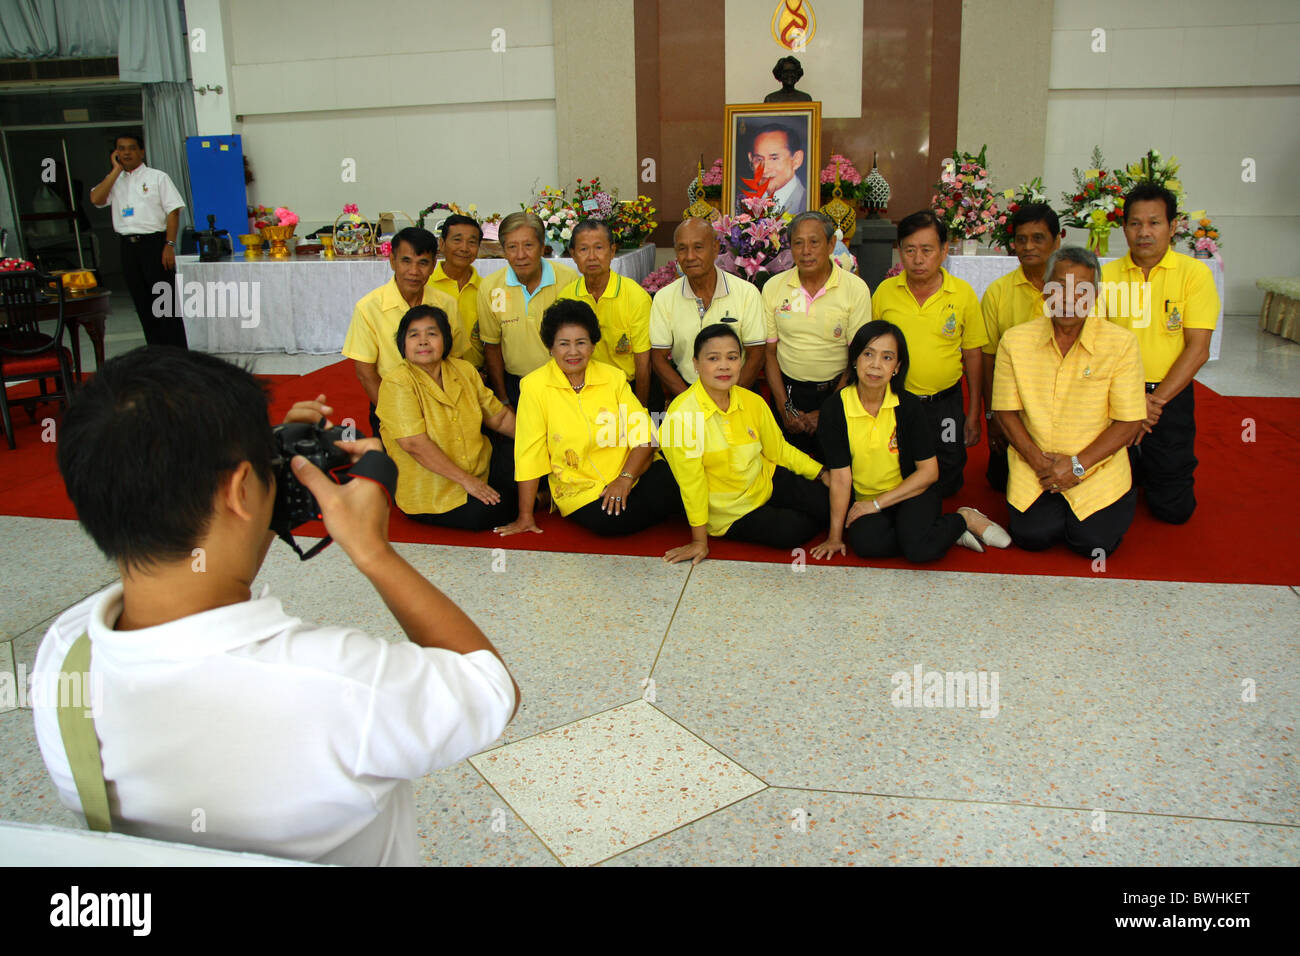 Les thaïlandais au cours de photographie prise de prier pour le rétablissement de l'hôpital Siriraj le Roi Bhumibol Adulyadej Banque D'Images